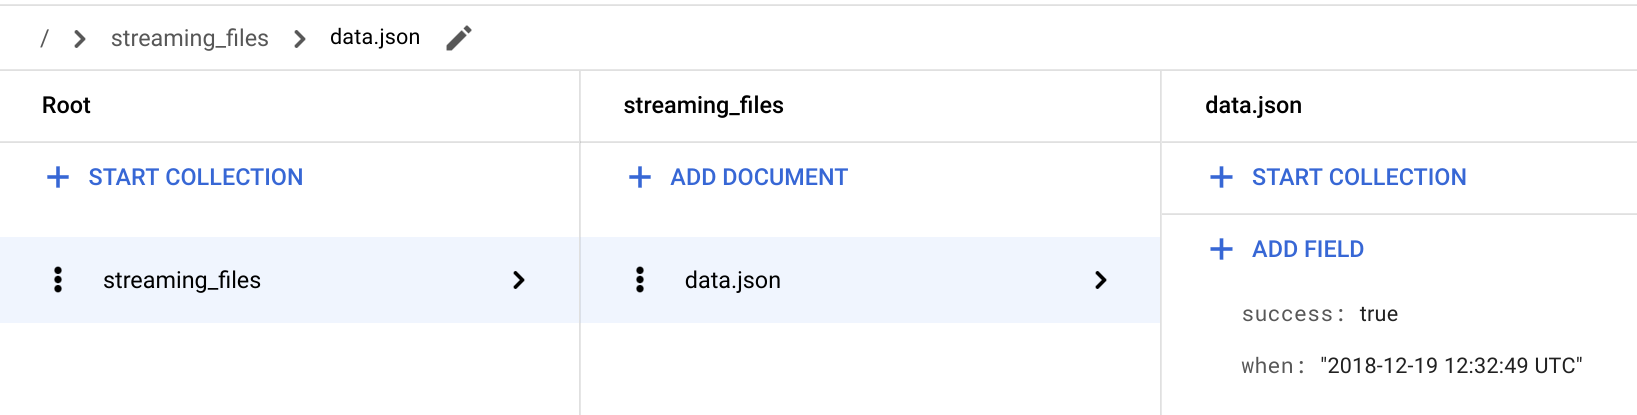 Verifica que la función “streaming” almacene el estado de éxito del archivo